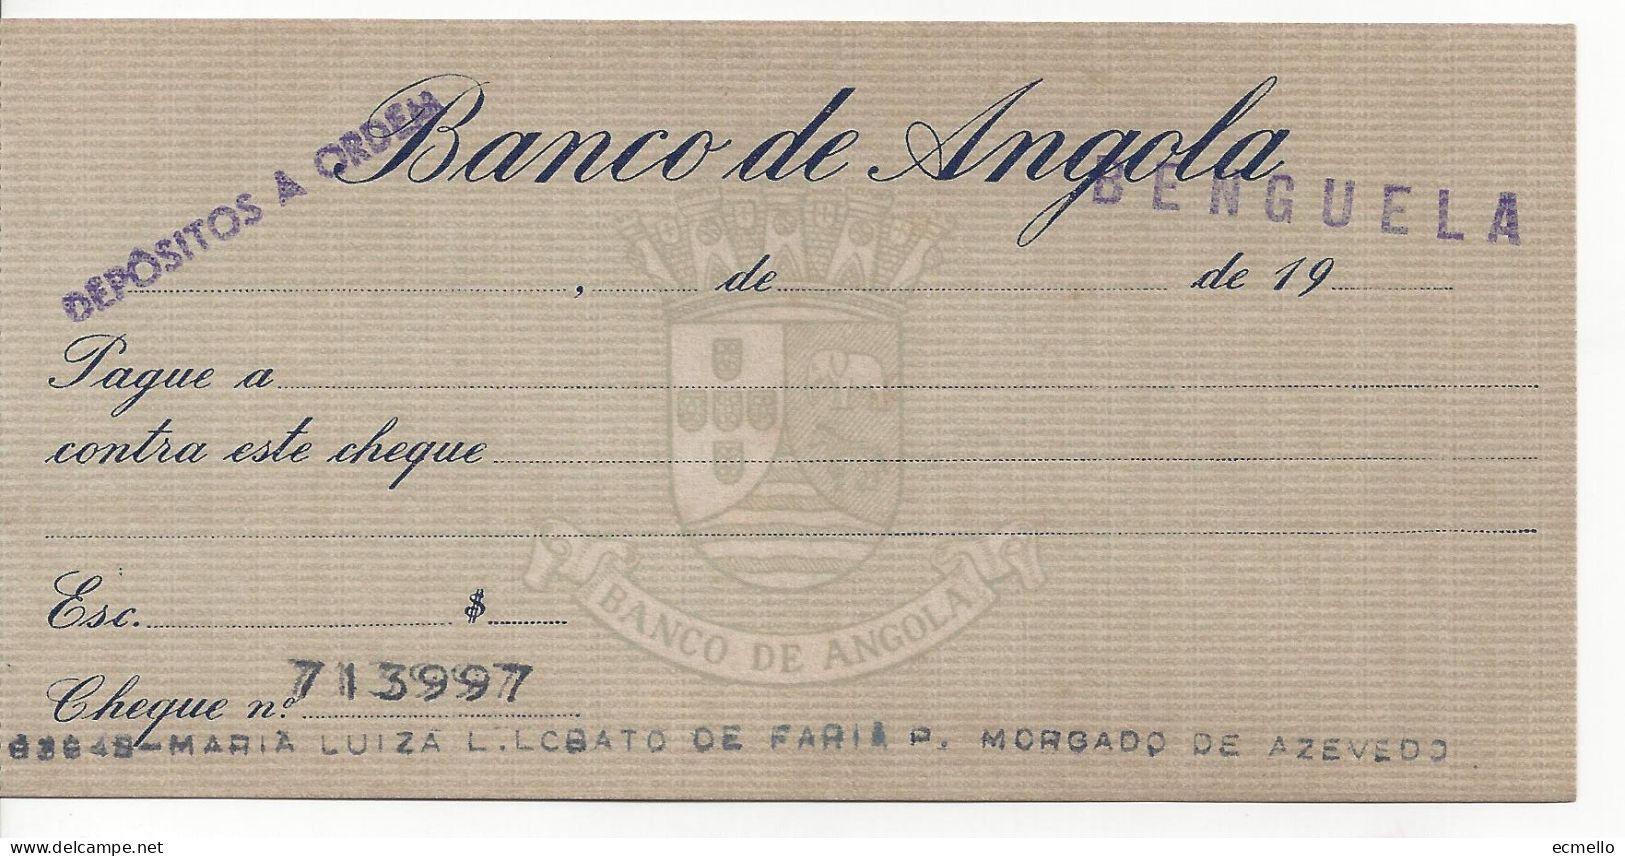 PORTUGAL ANGOLA CHEQUE CHECK BANCO DE ANGOLA, BENGUELA, 1950'S SCARCE - Schecks  Und Reiseschecks